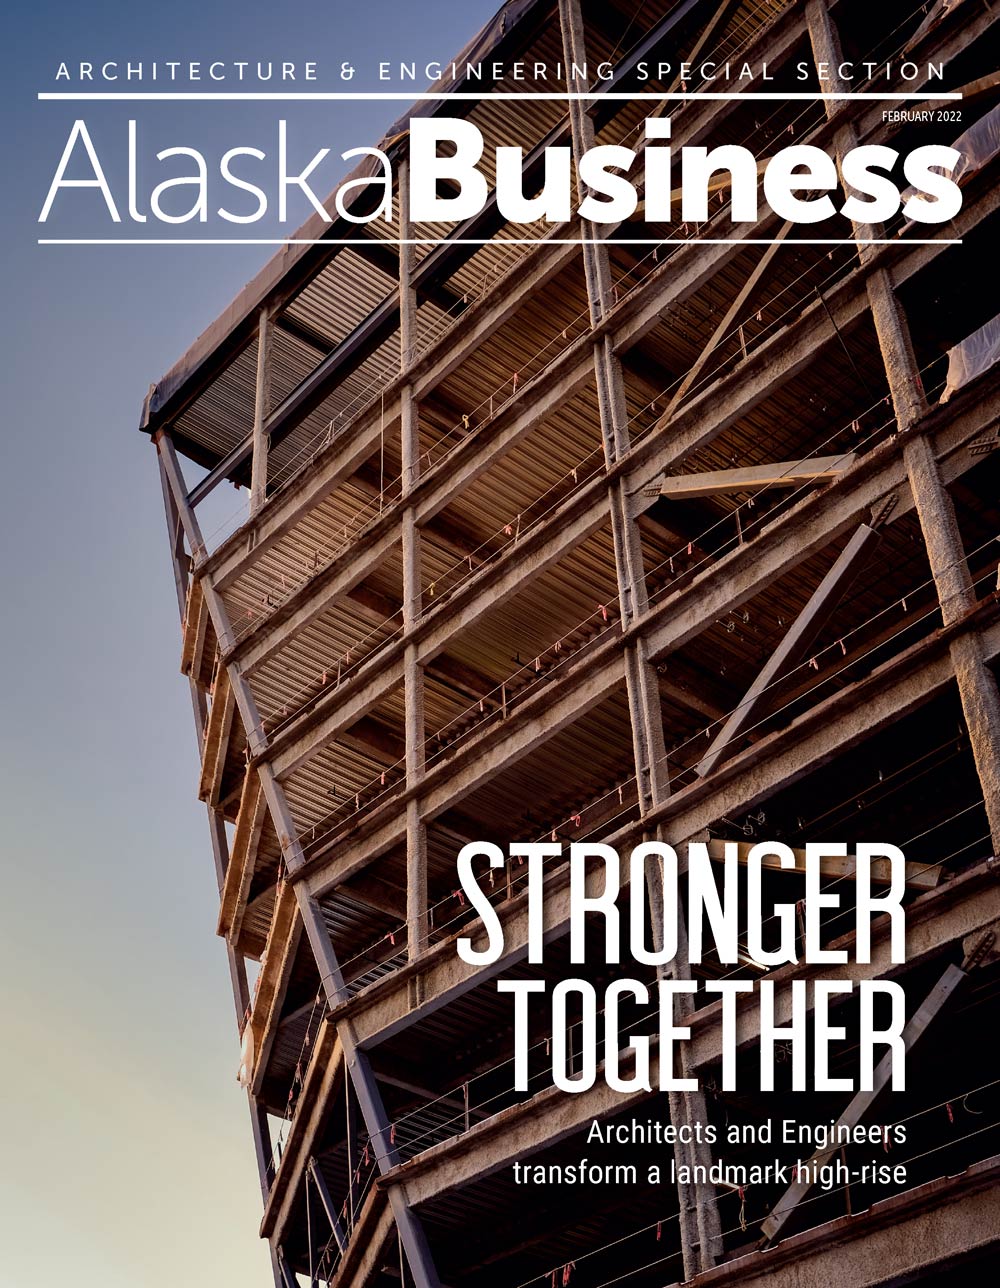 Alaska Business Magazine February 2022 cover